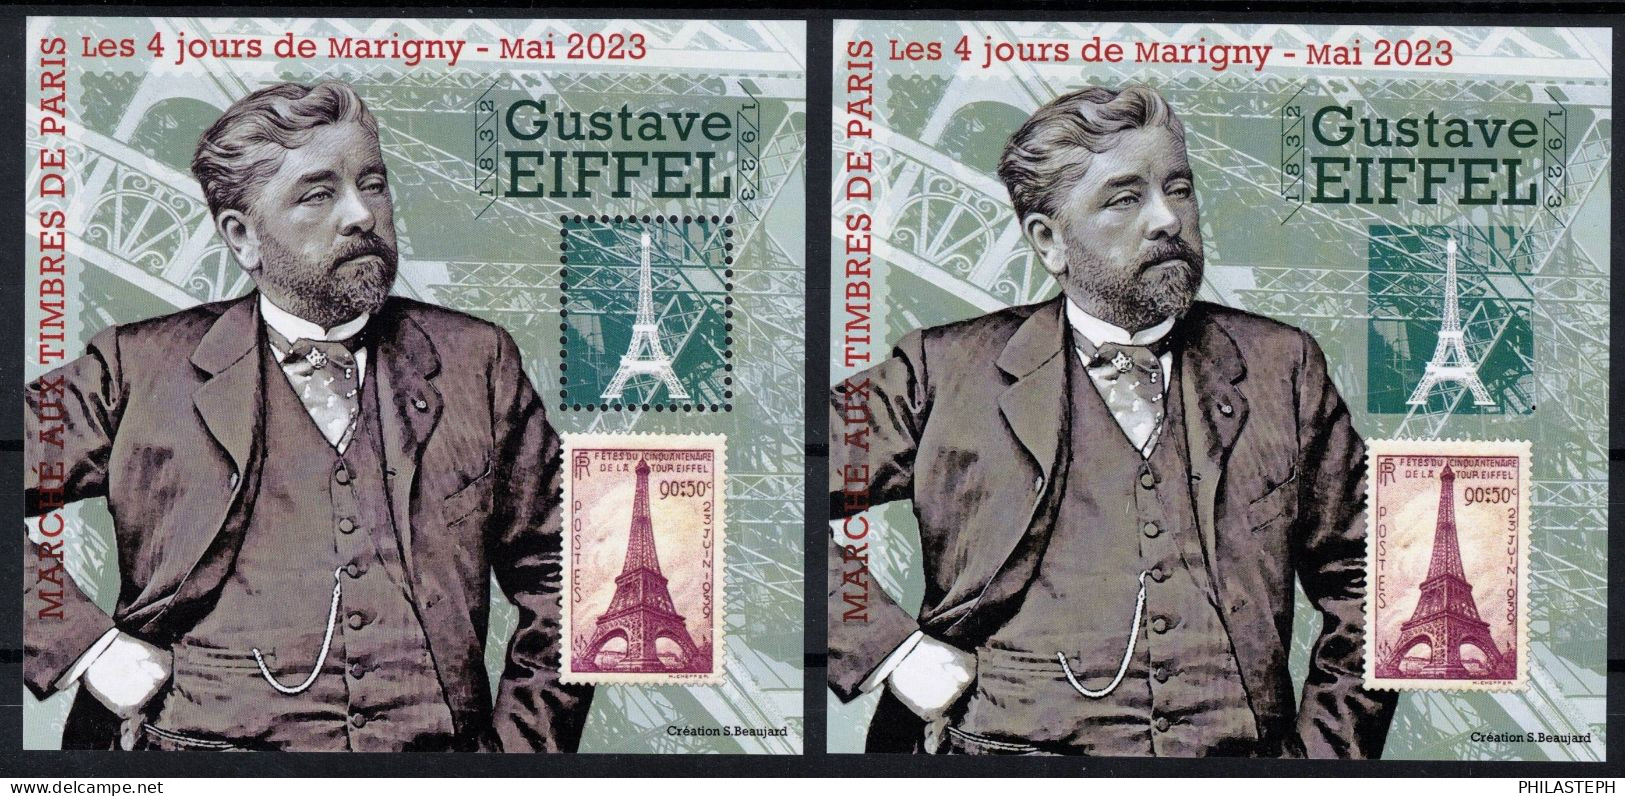 FRANCE 2023 BLOC DES QUATRE JOURS DE MARIGNY - Paire Dentelé/non Dentelé  Gustave Eiffel - Neuf ** - Numéroté - Carré Marigny